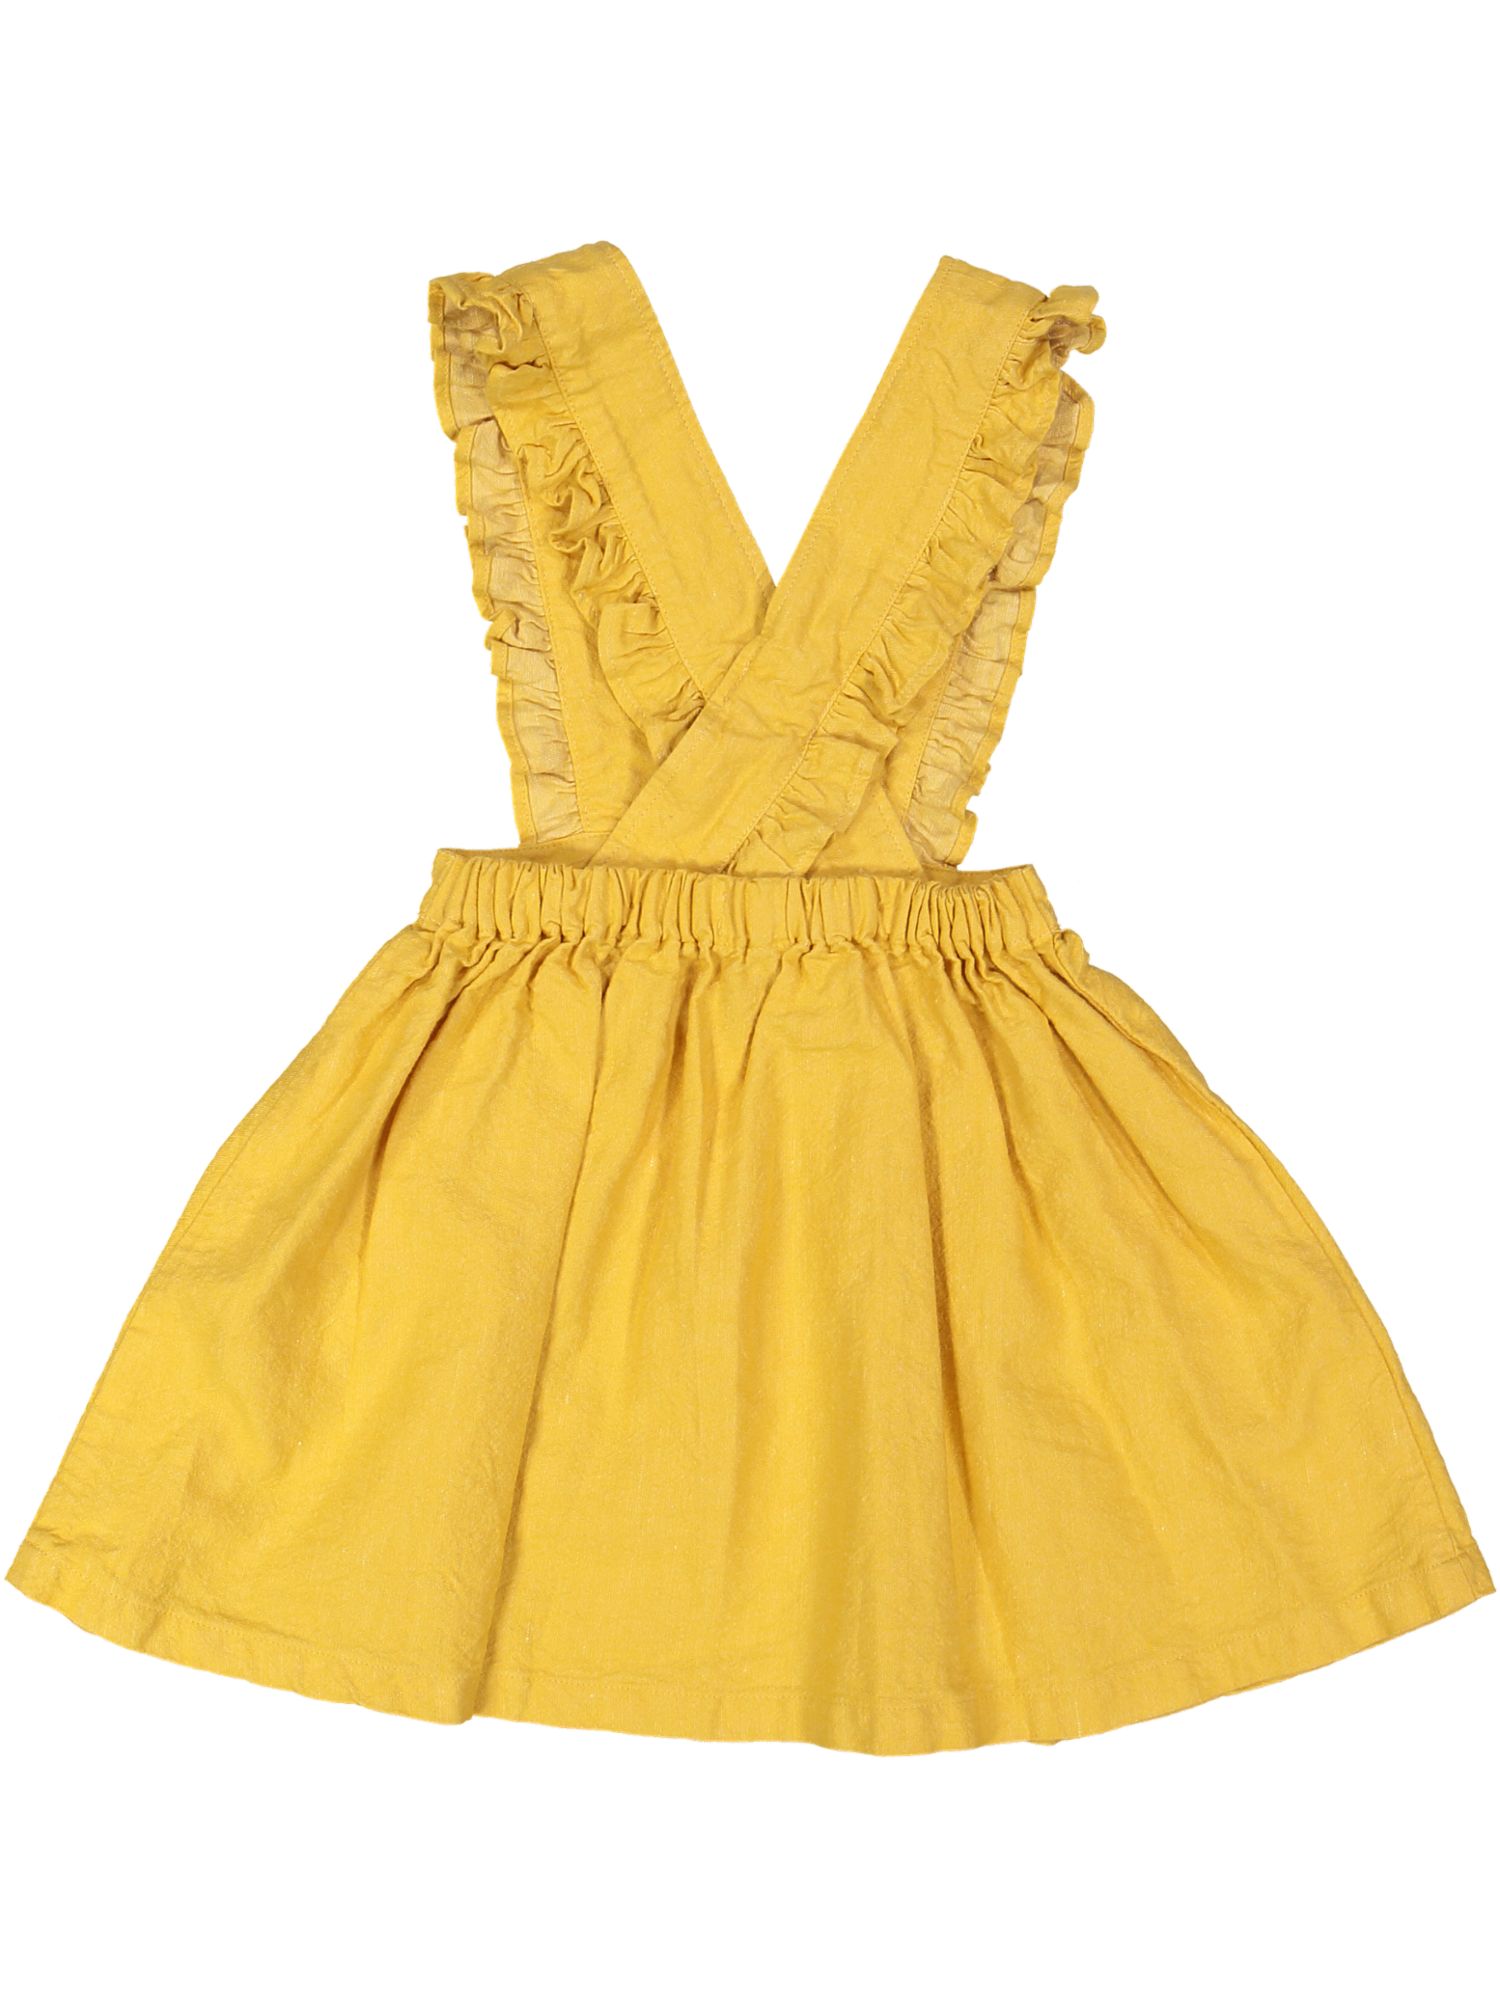 kleedje geel overgooier met frul 04j